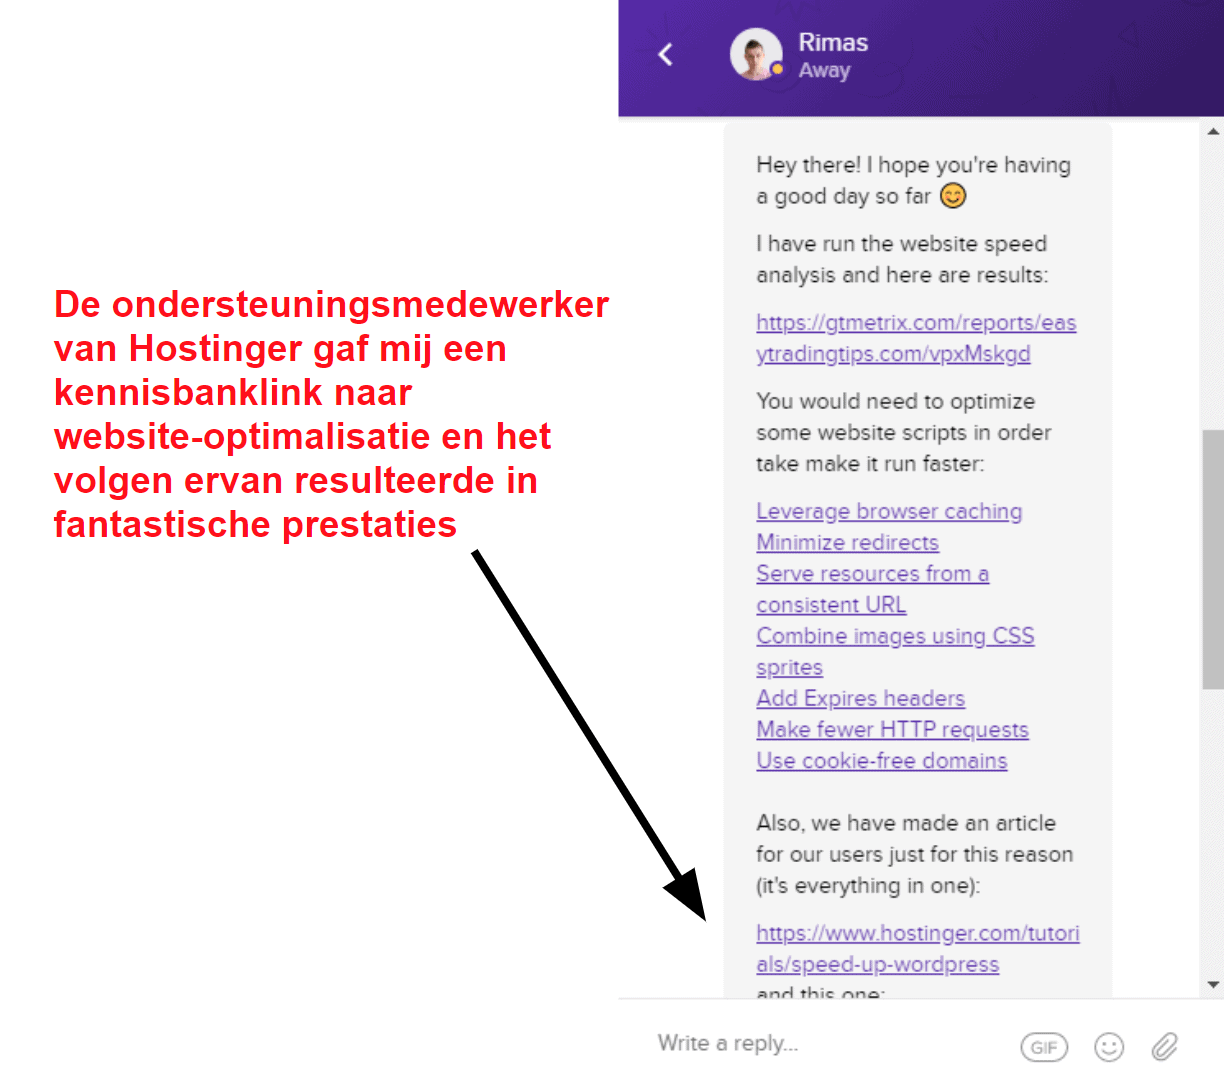 Hostinger live chat optimization support_NL